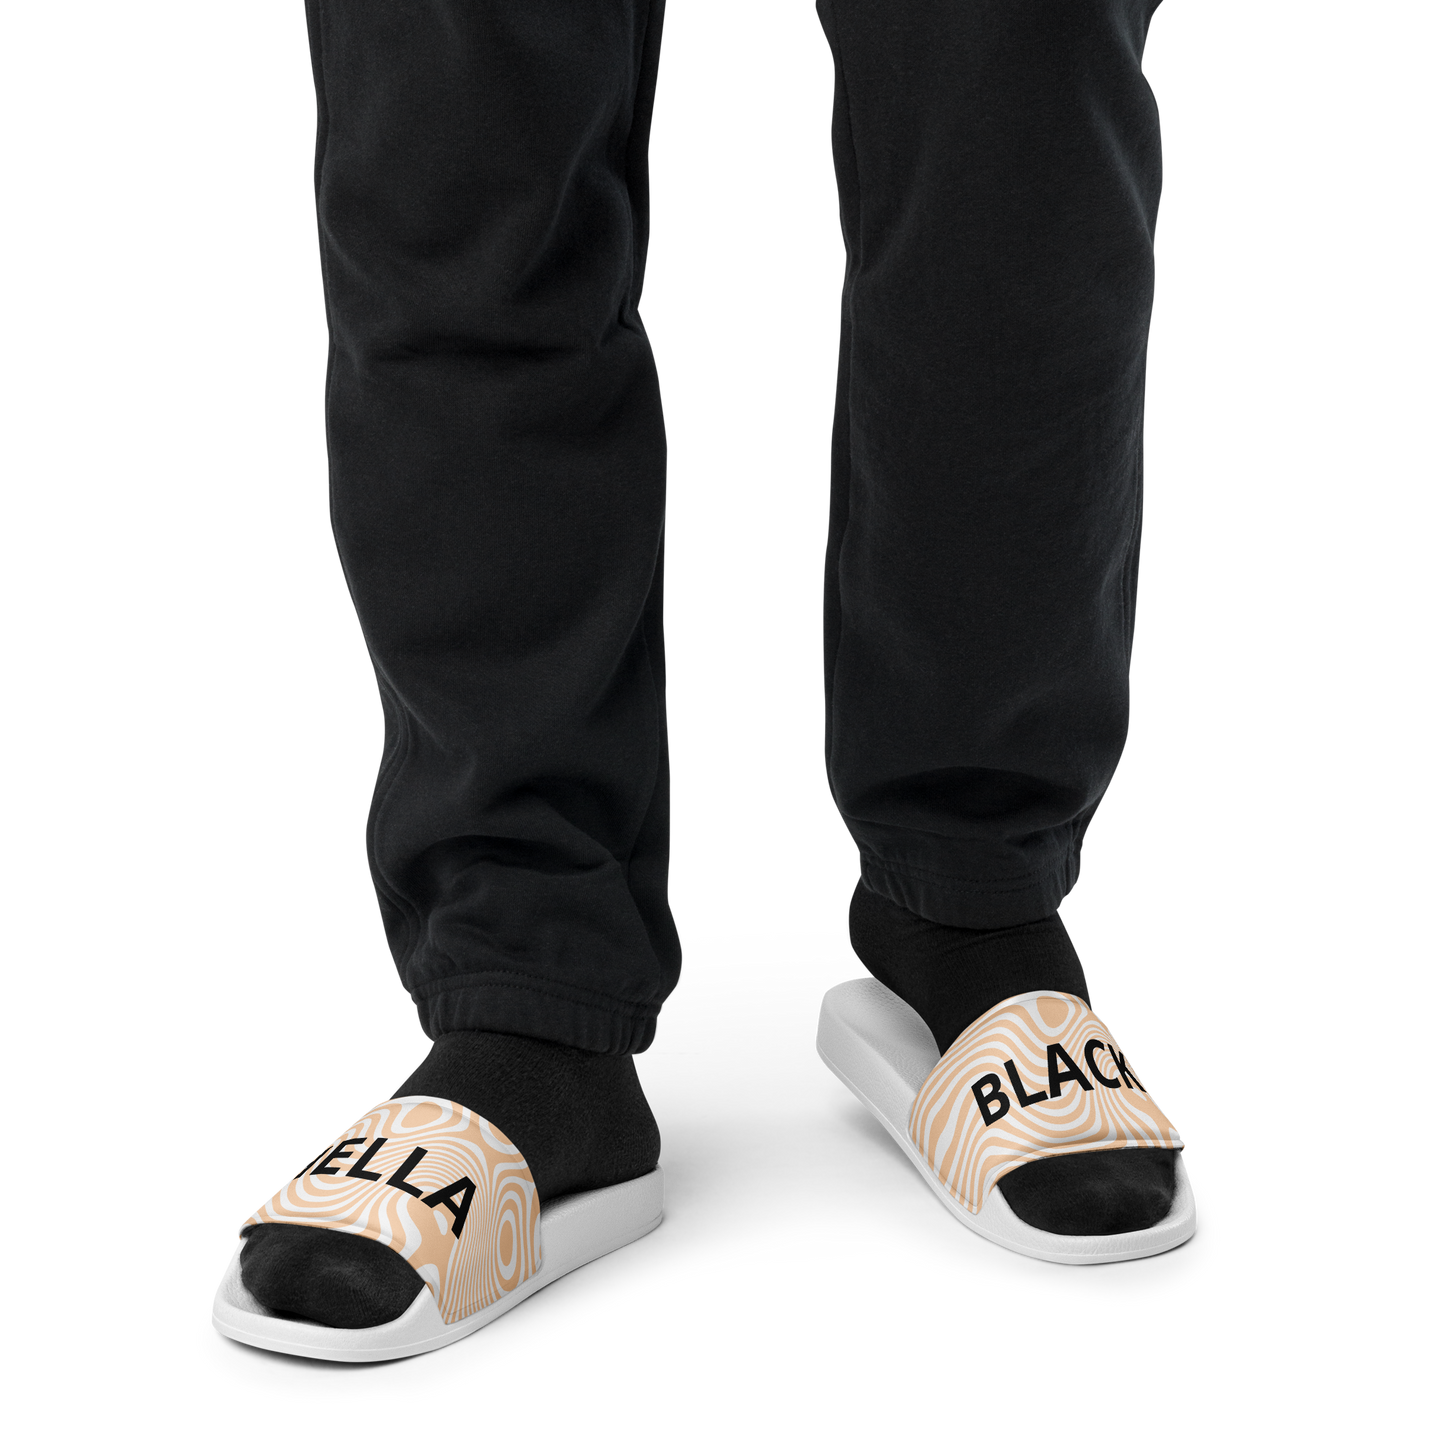 Hella Black Men's Slide Sandals